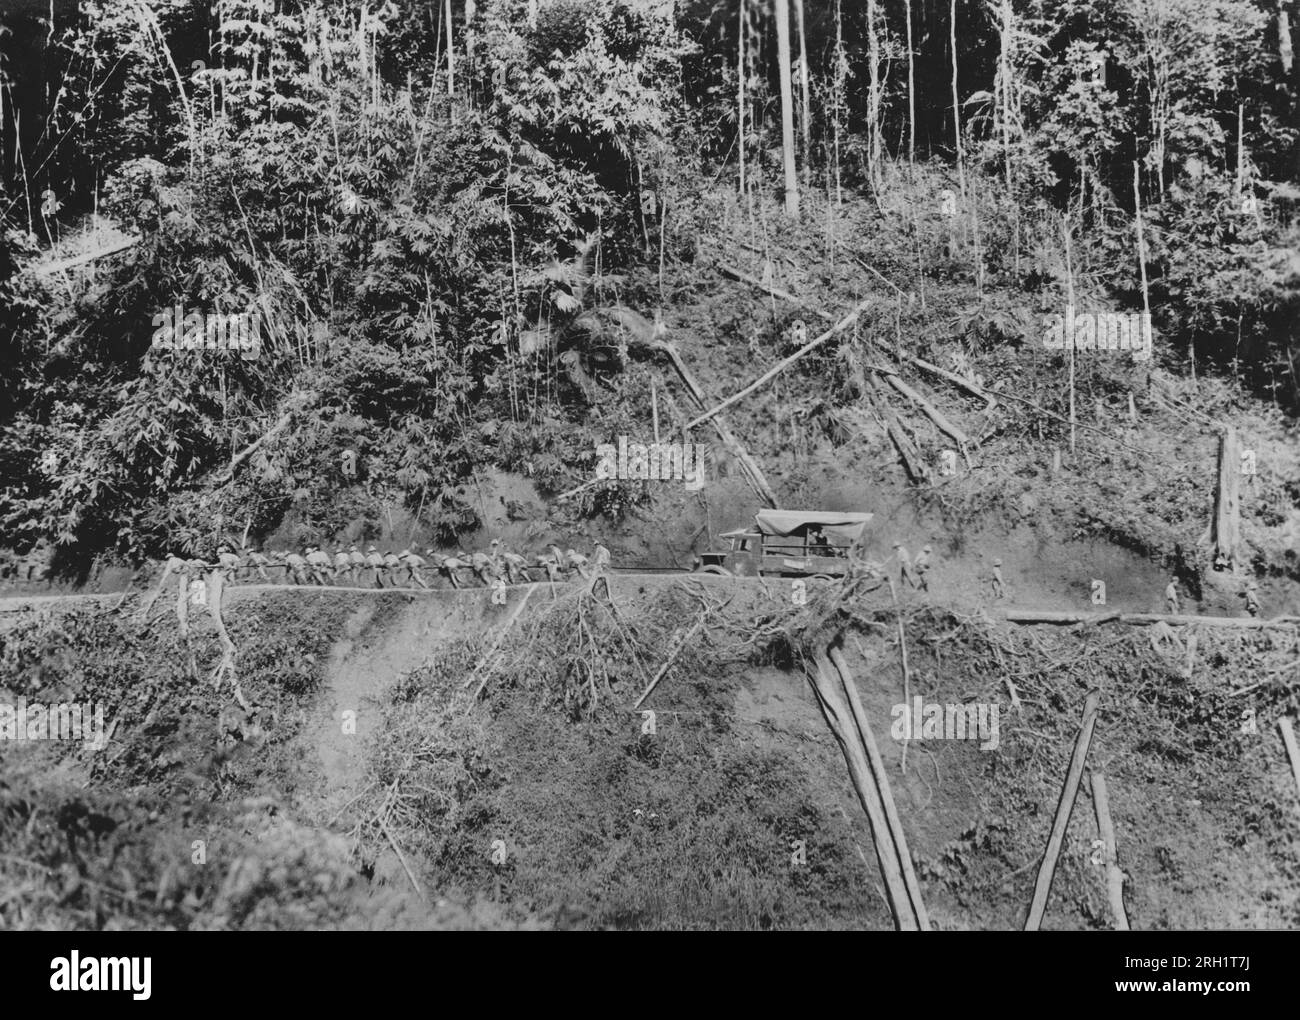 Malaya Campaign, Dezember 1941 – Februar 1942. Kaiserlich-japanische Armeetruppen des Nishimura Vehicle Corps schleppen einen ihrer LKWs manuell auf eine steile und unbefestigte Bergstraße, während sie etwa im Januar 1942 durch Malaya vorrücken. Stockfoto